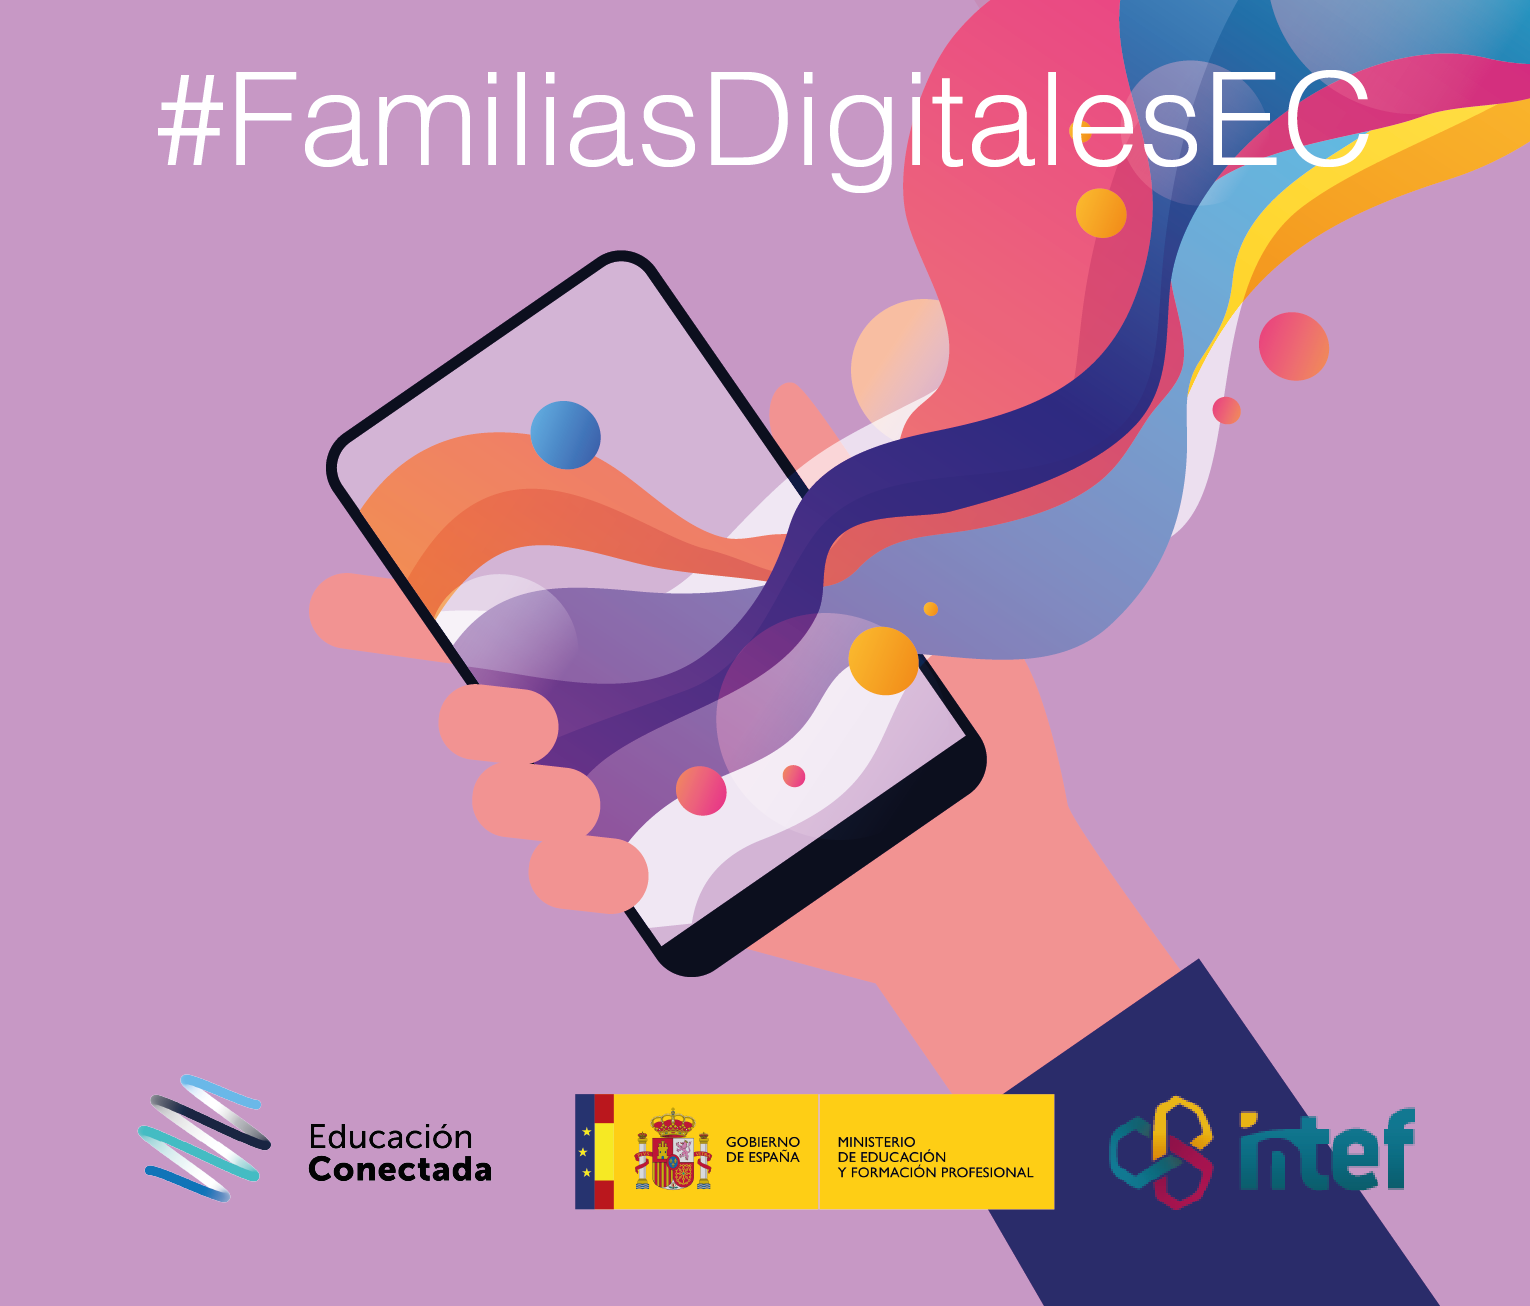 Familias digitales: Acompaña a tus hijas e hijos en la creación de contenidos digitales (nivel inicial) FamiliasDig5